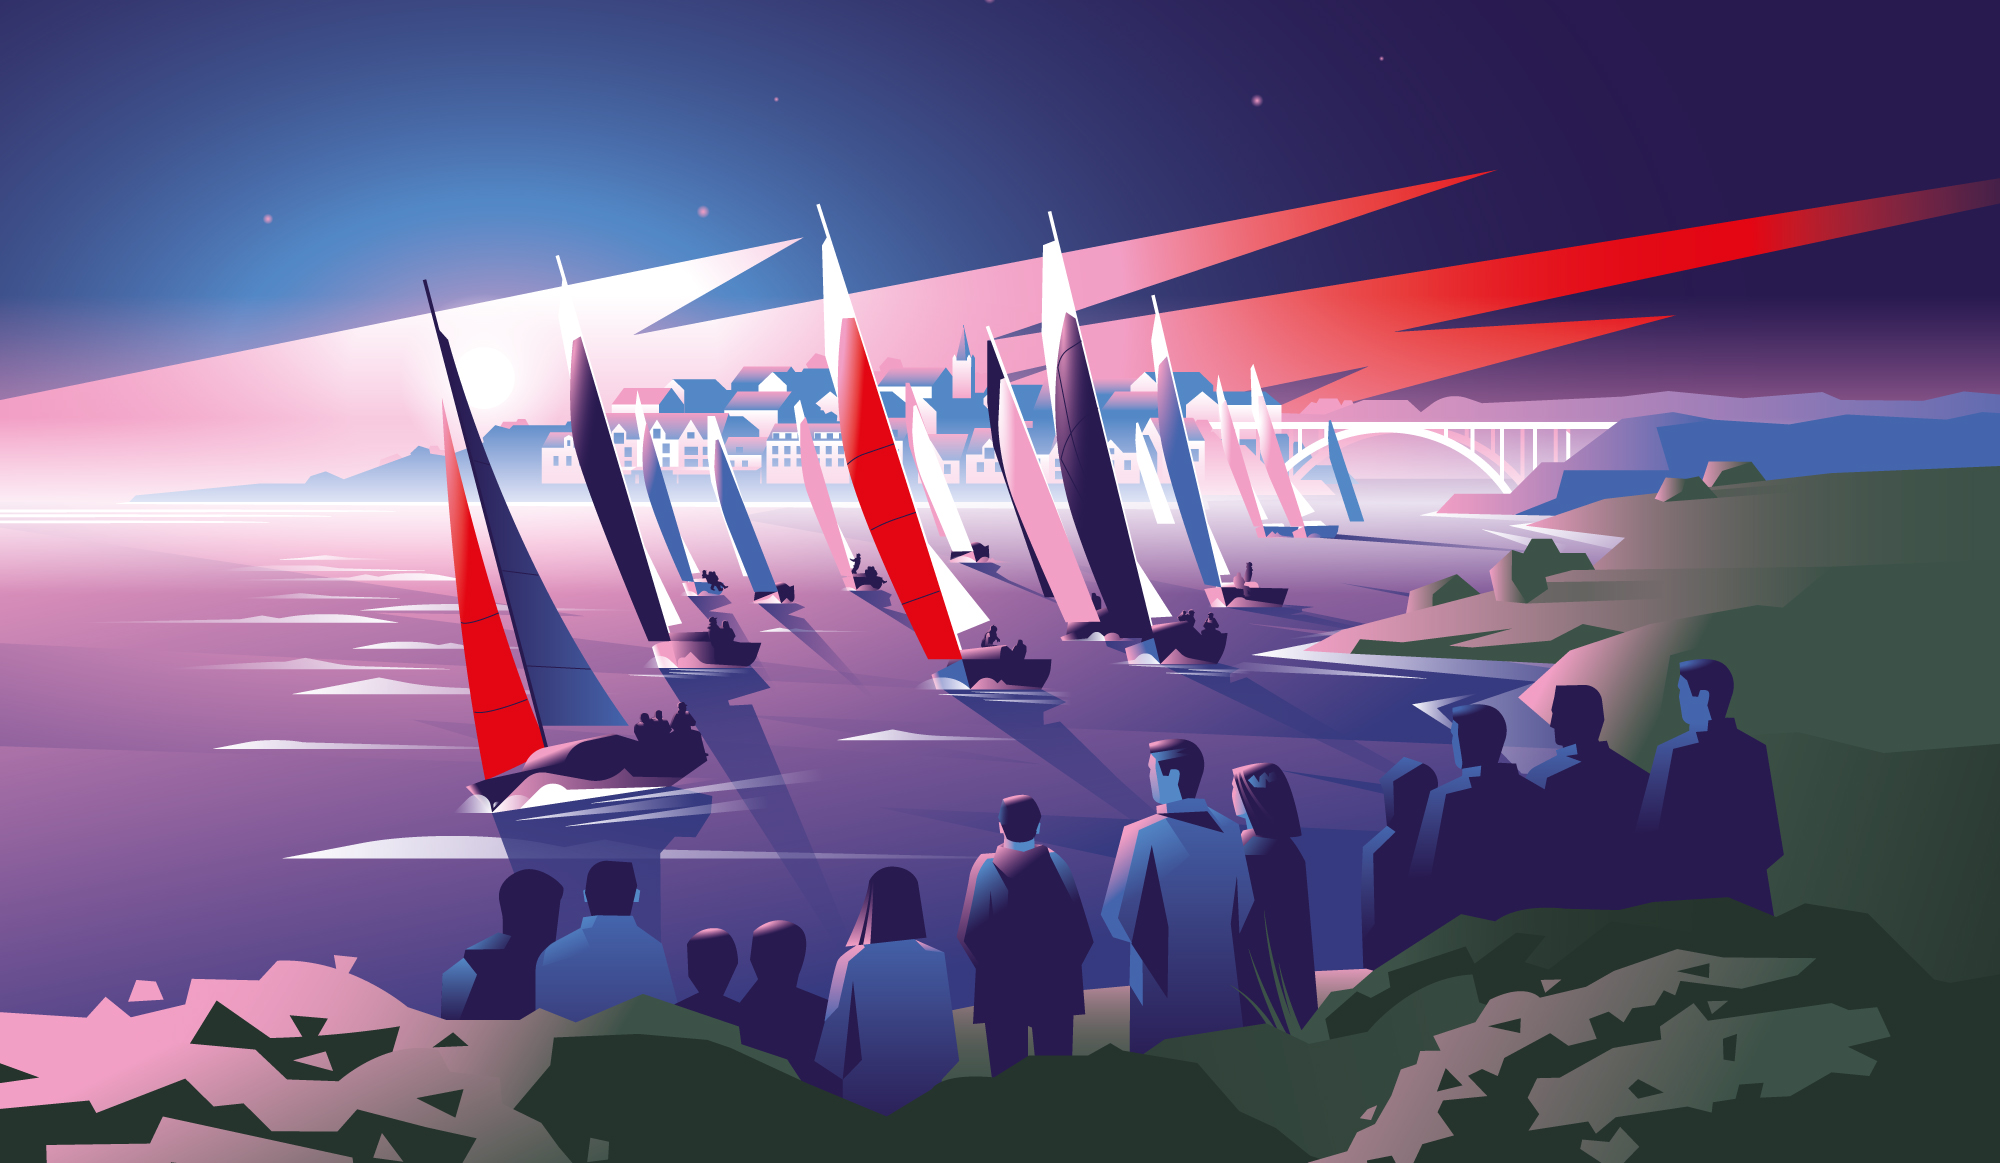 Affiche illustrée pour la course de voile SPI Ouest France